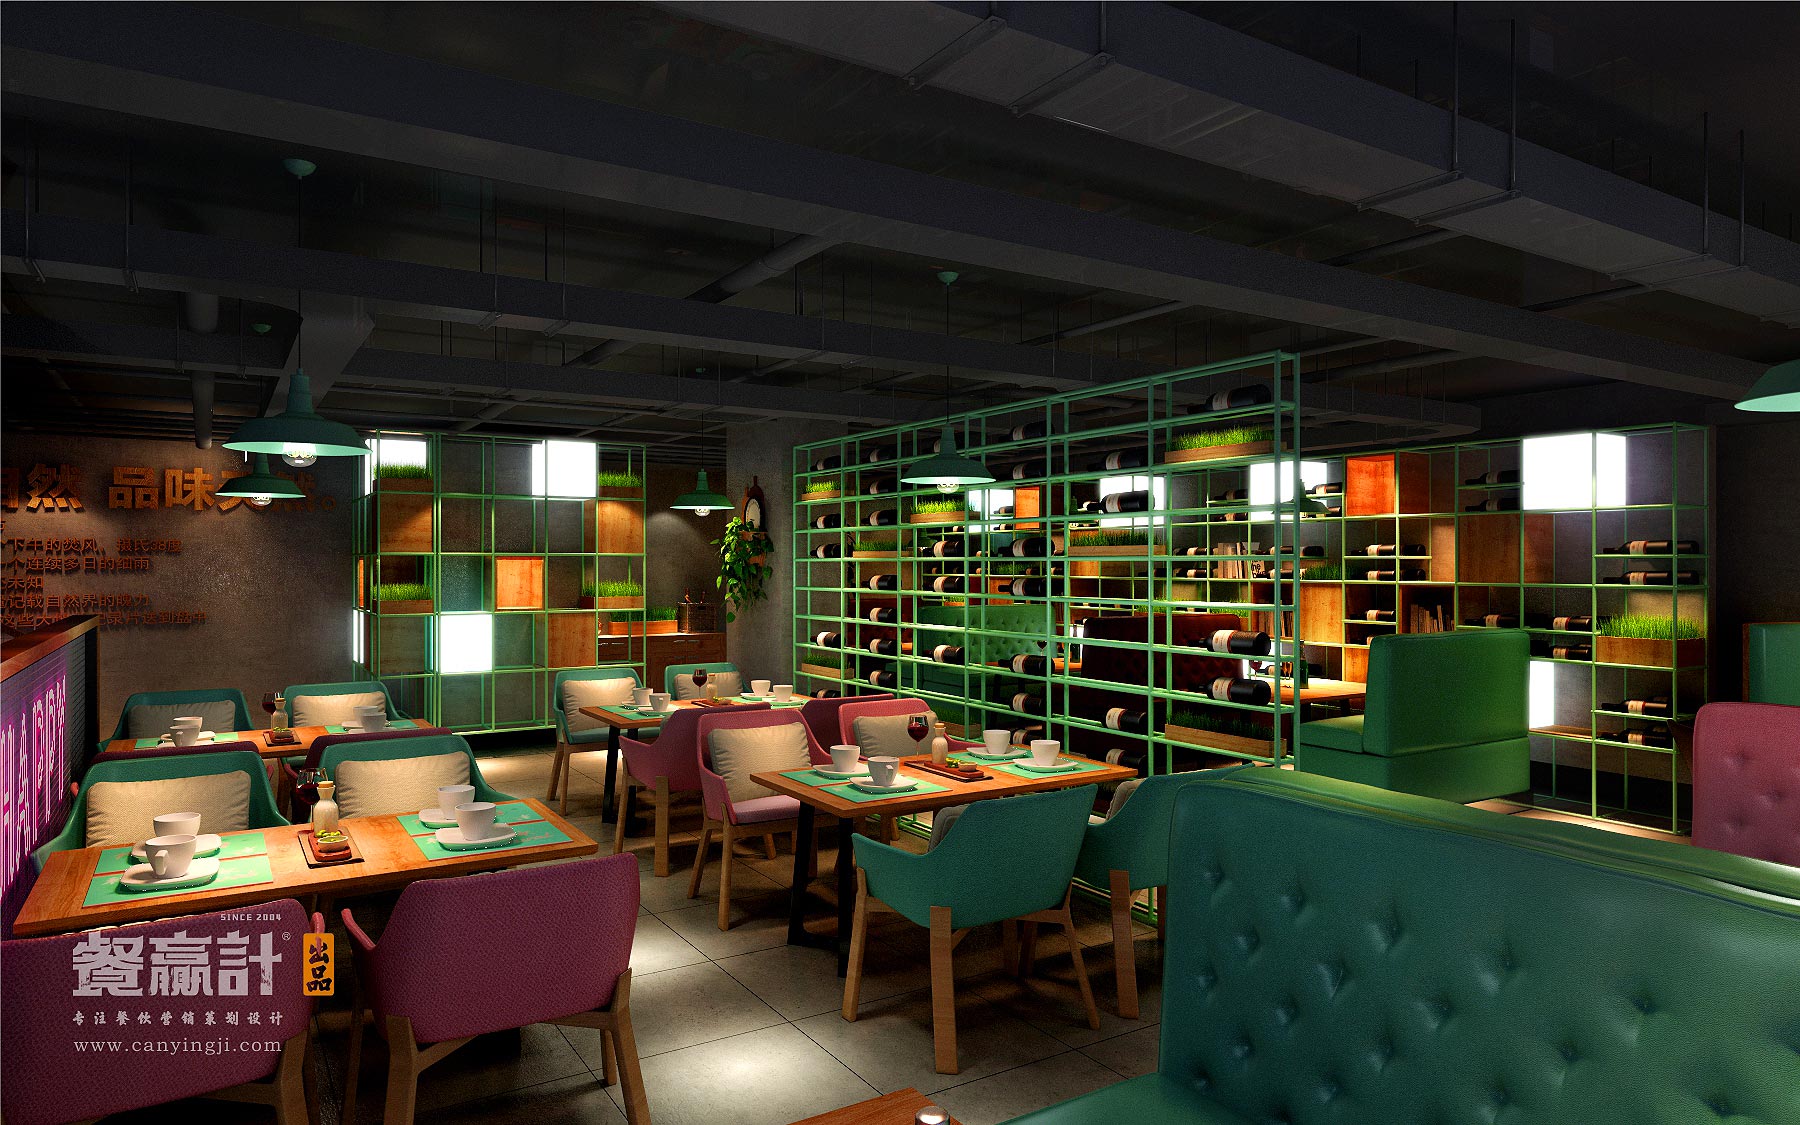 深圳生态主题餐厅空间升级改造设计——禾π网红音乐餐吧效果图